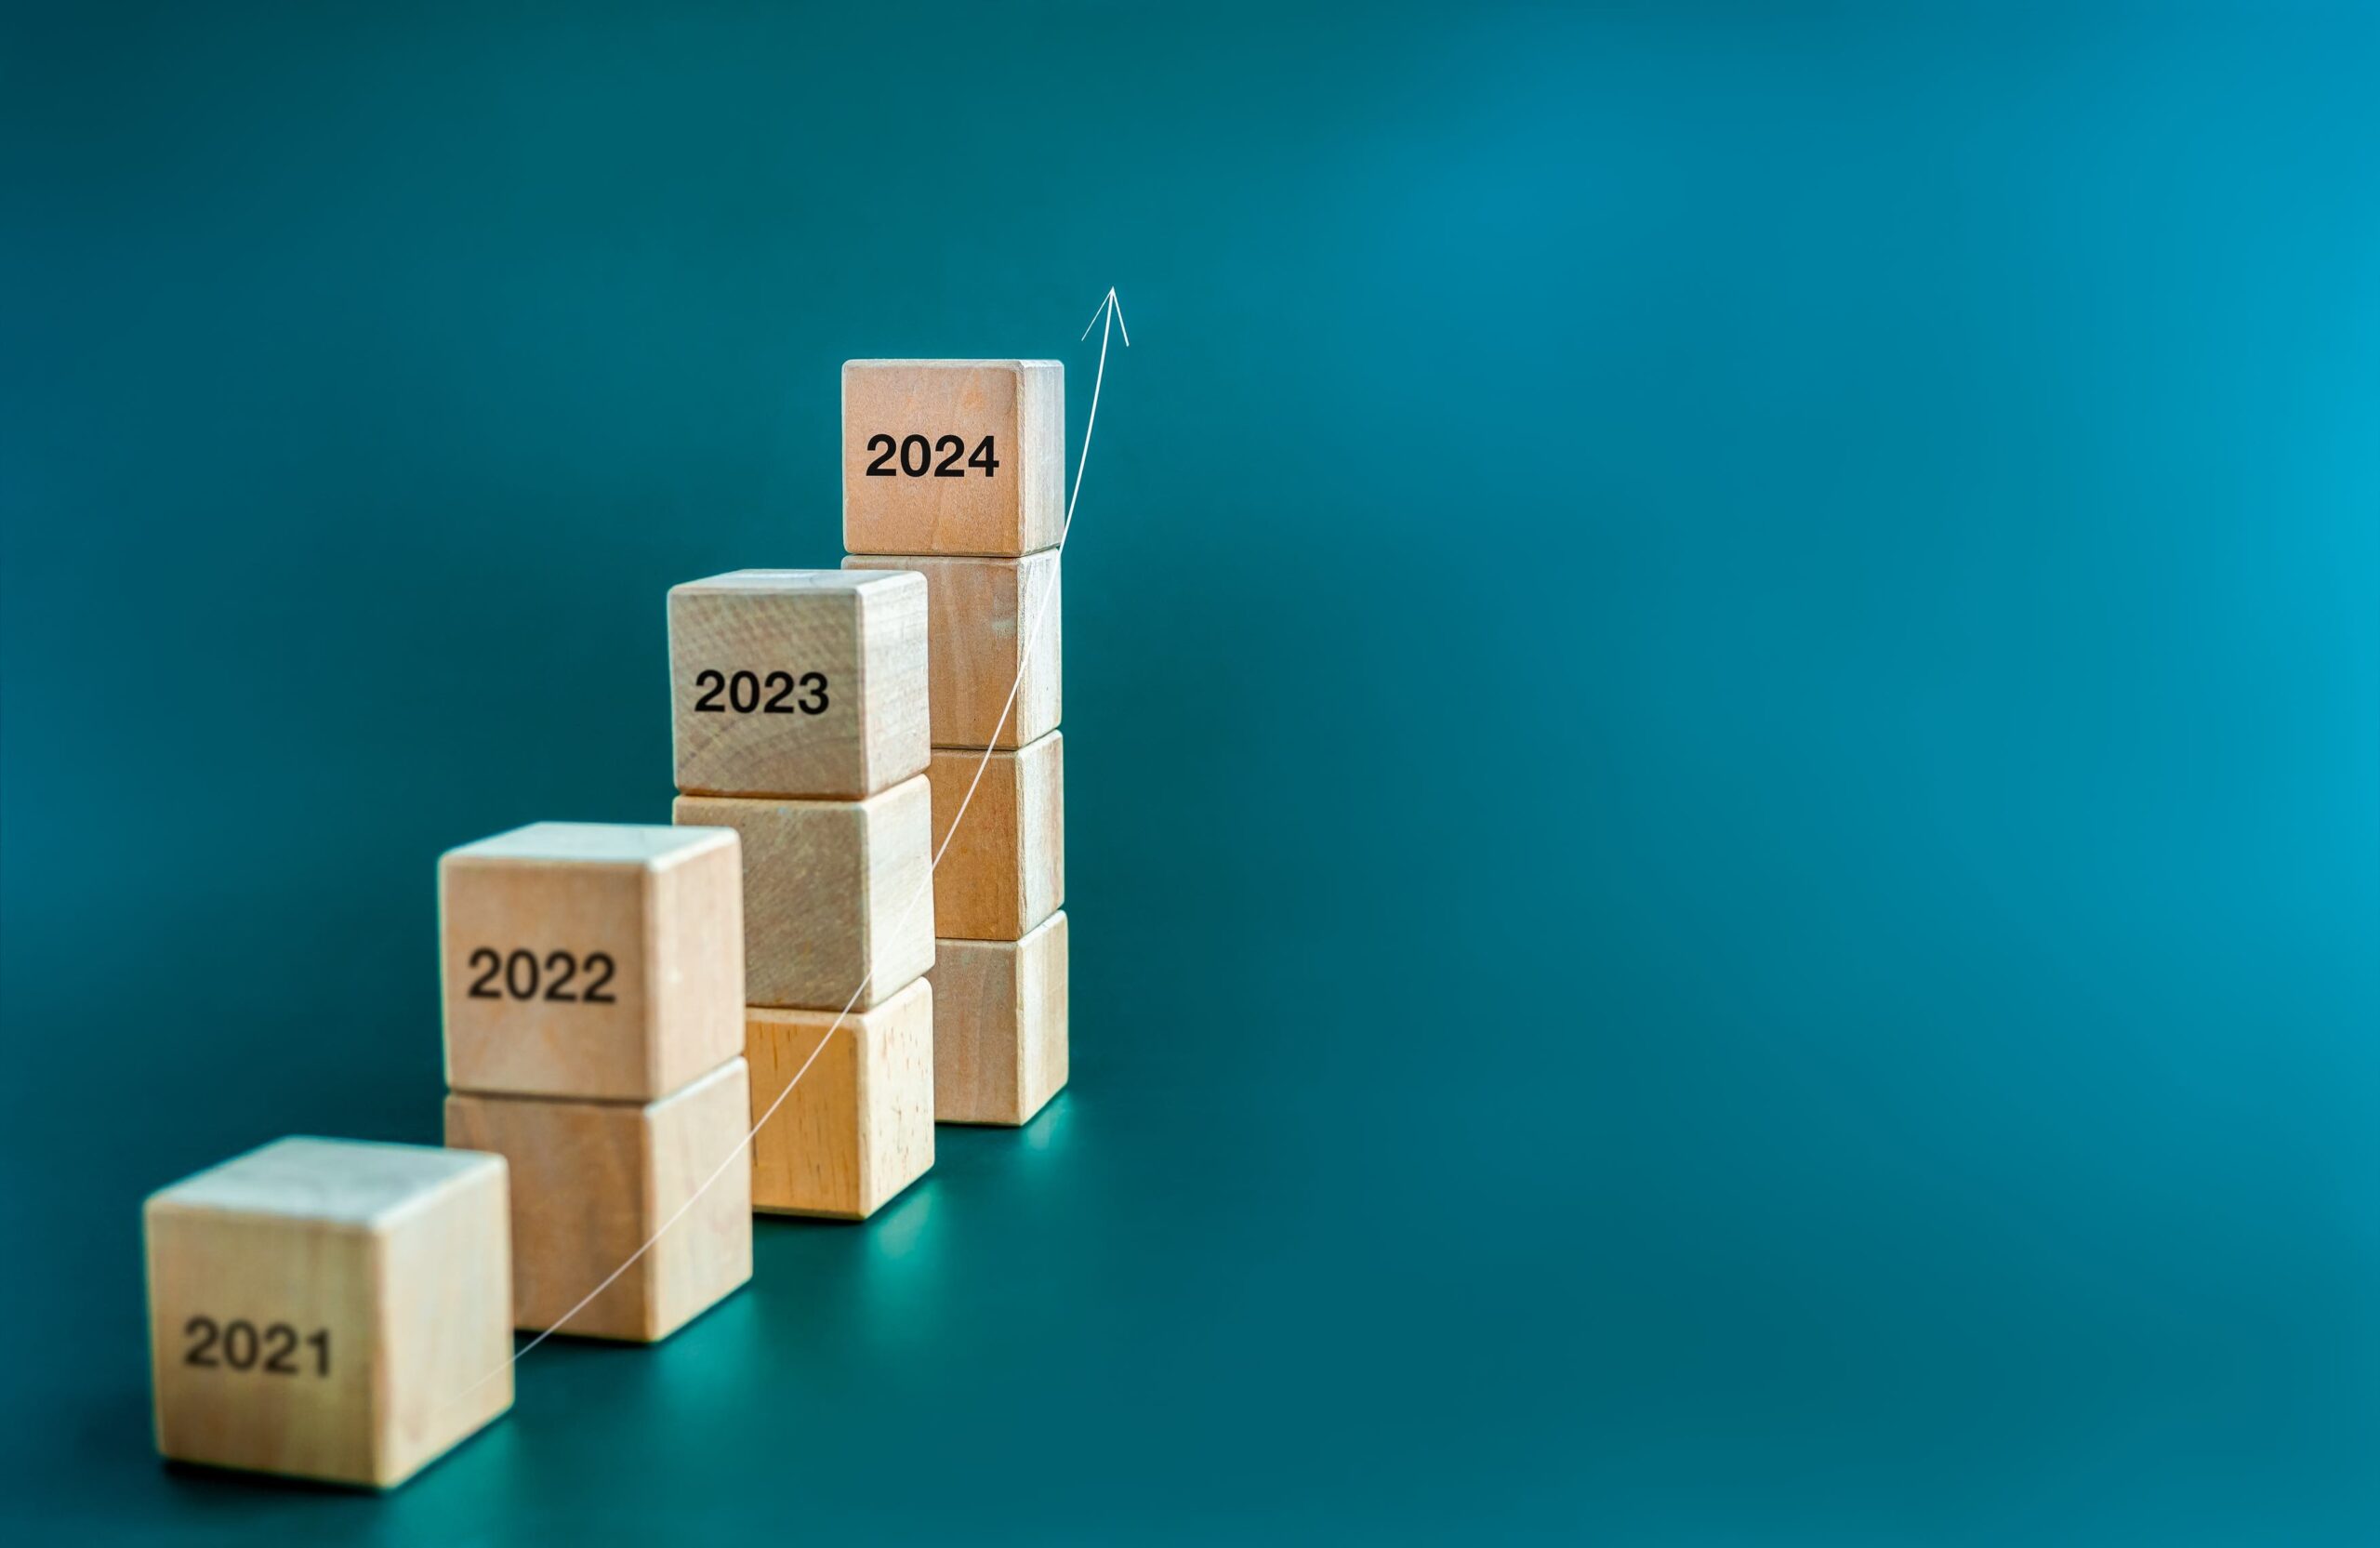 Kleine Stapel von Blöcken in ansteigender Höhe, auf denen die Jahreszahlen 2021-2024 eingraviert sind, um den Lauf der Zeit anzuzeigen.